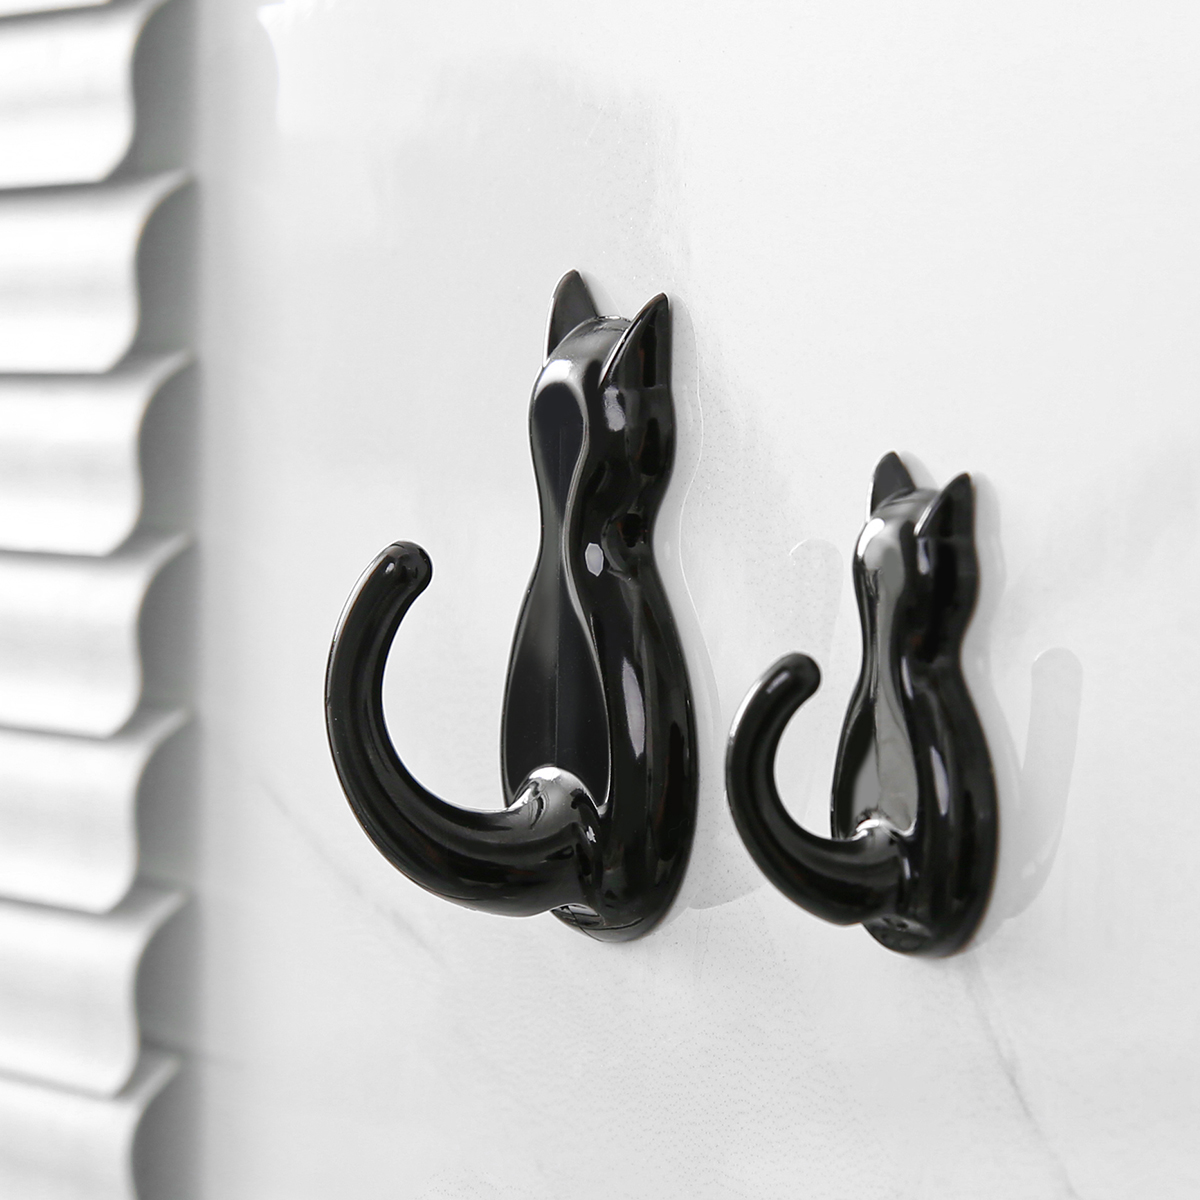 KOKUBO日本小猫挂钩免打孔浴室无痕强力厕所厨房门后墙壁钥匙粘钩